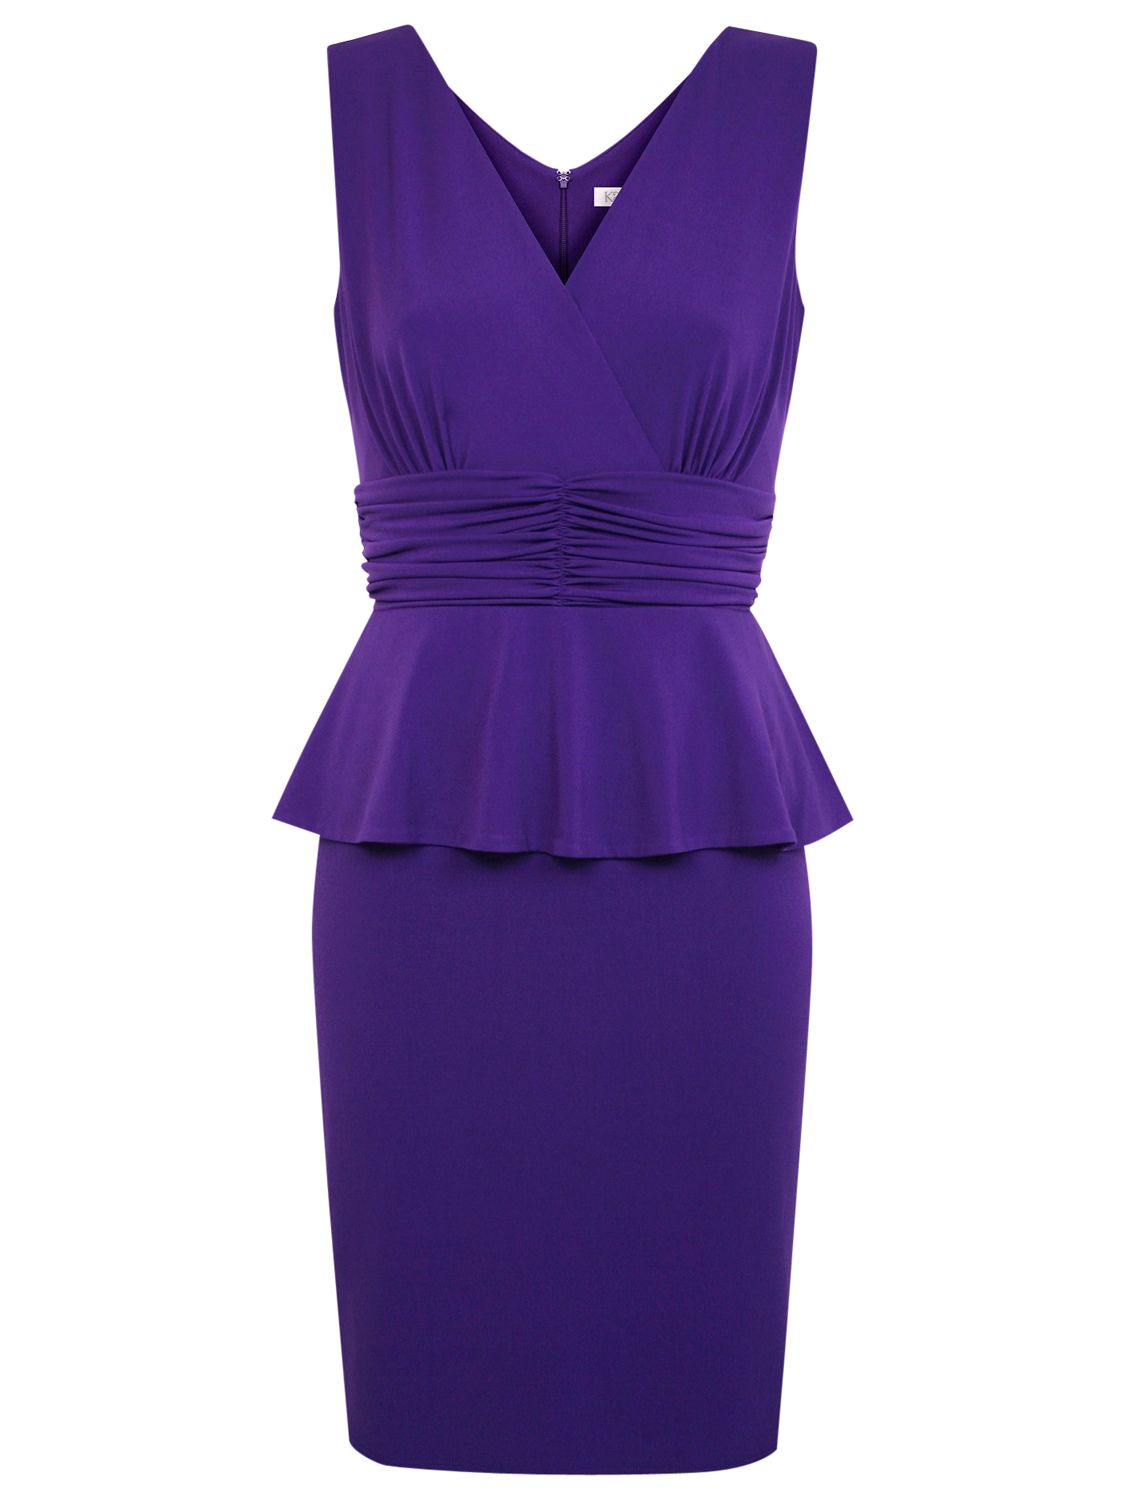 Buy Kaliko Peplum Jersey Dress, Purple Online at johnlewis